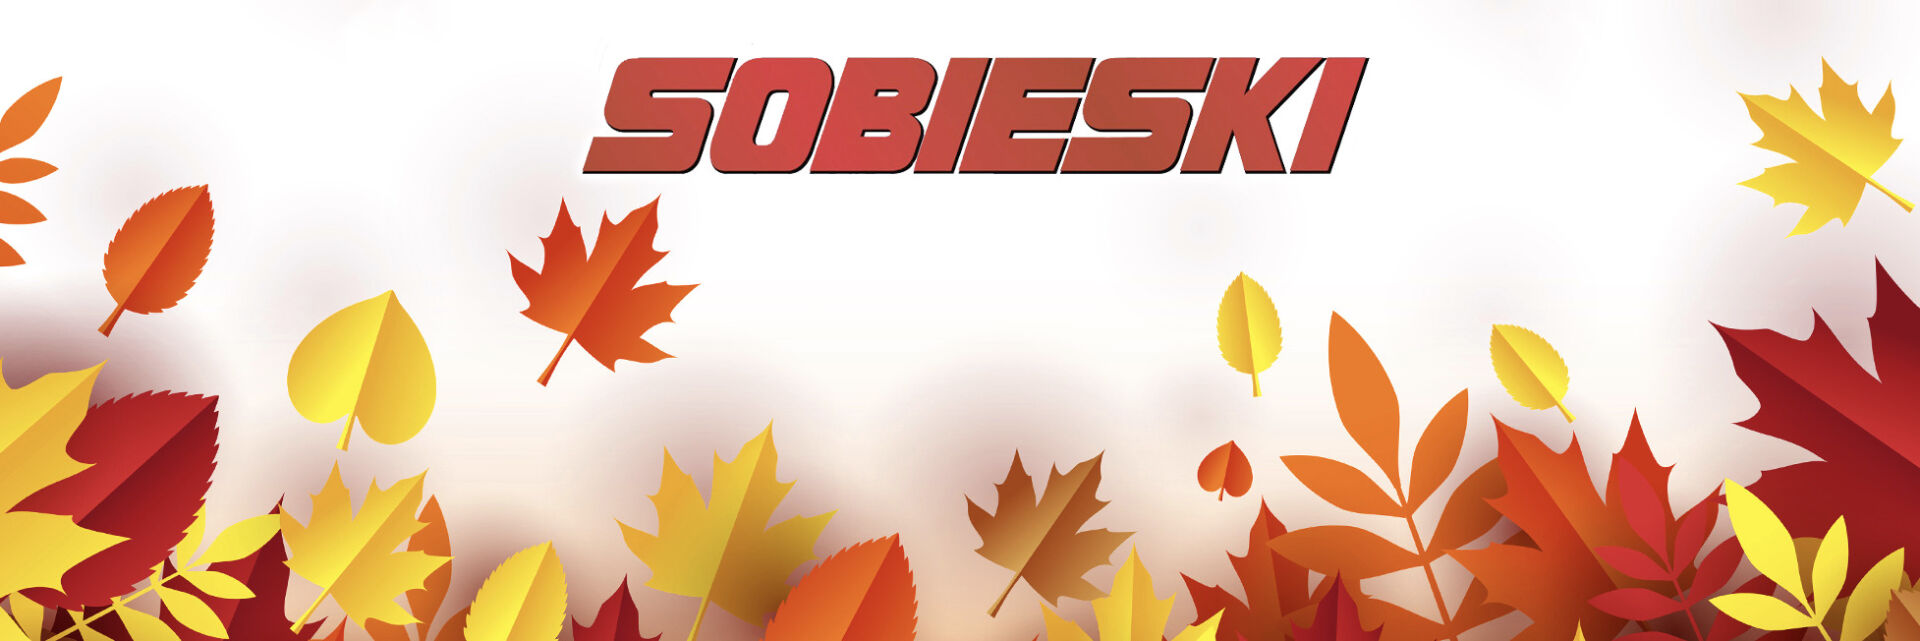 Sobieski Fall